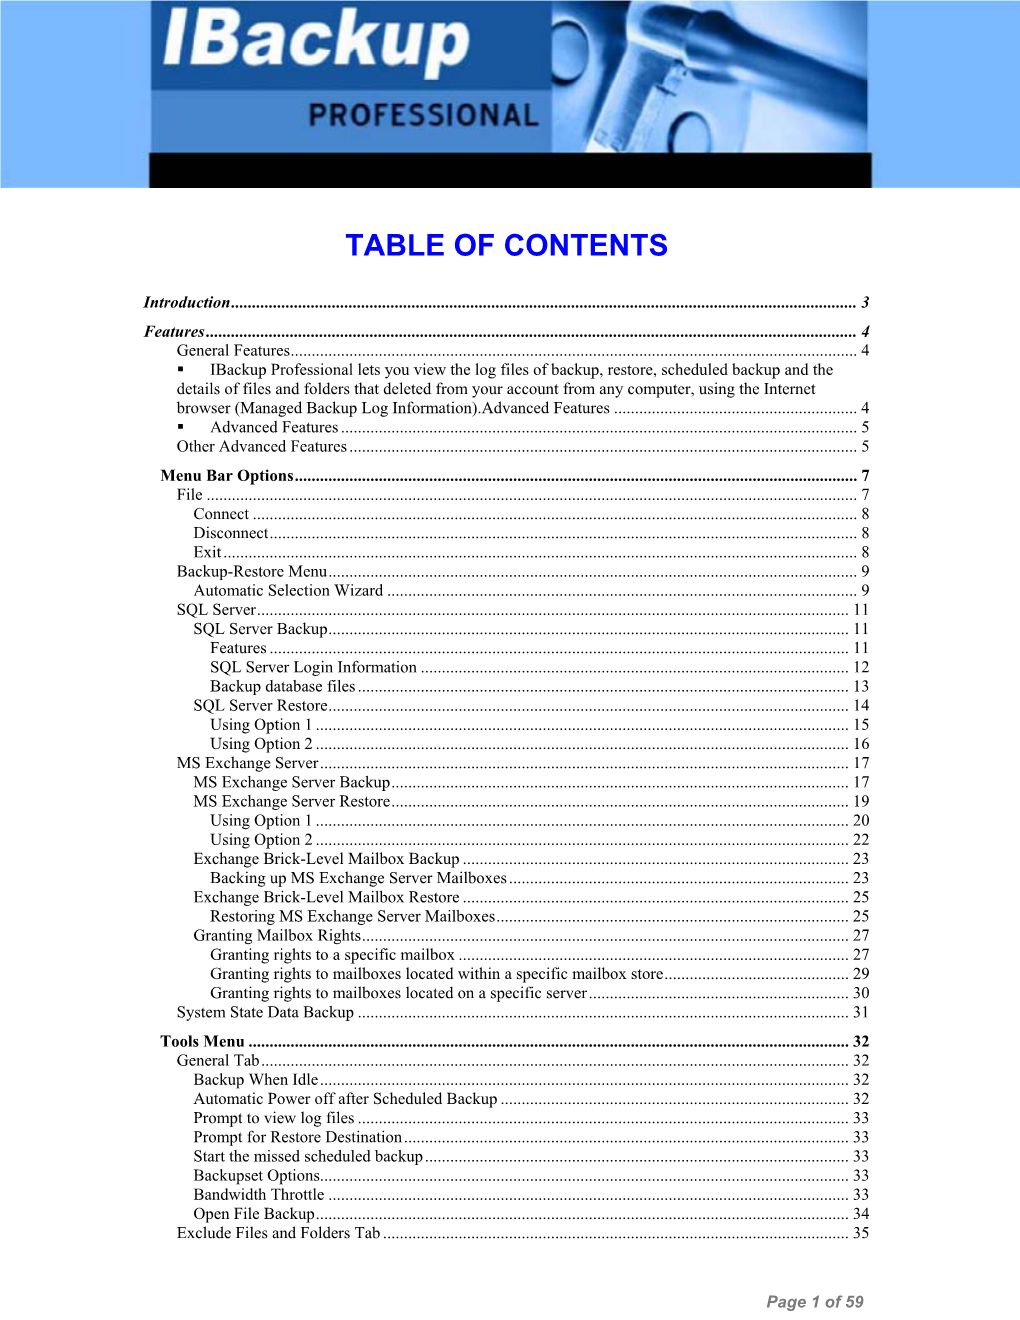 User Manual (PDF)